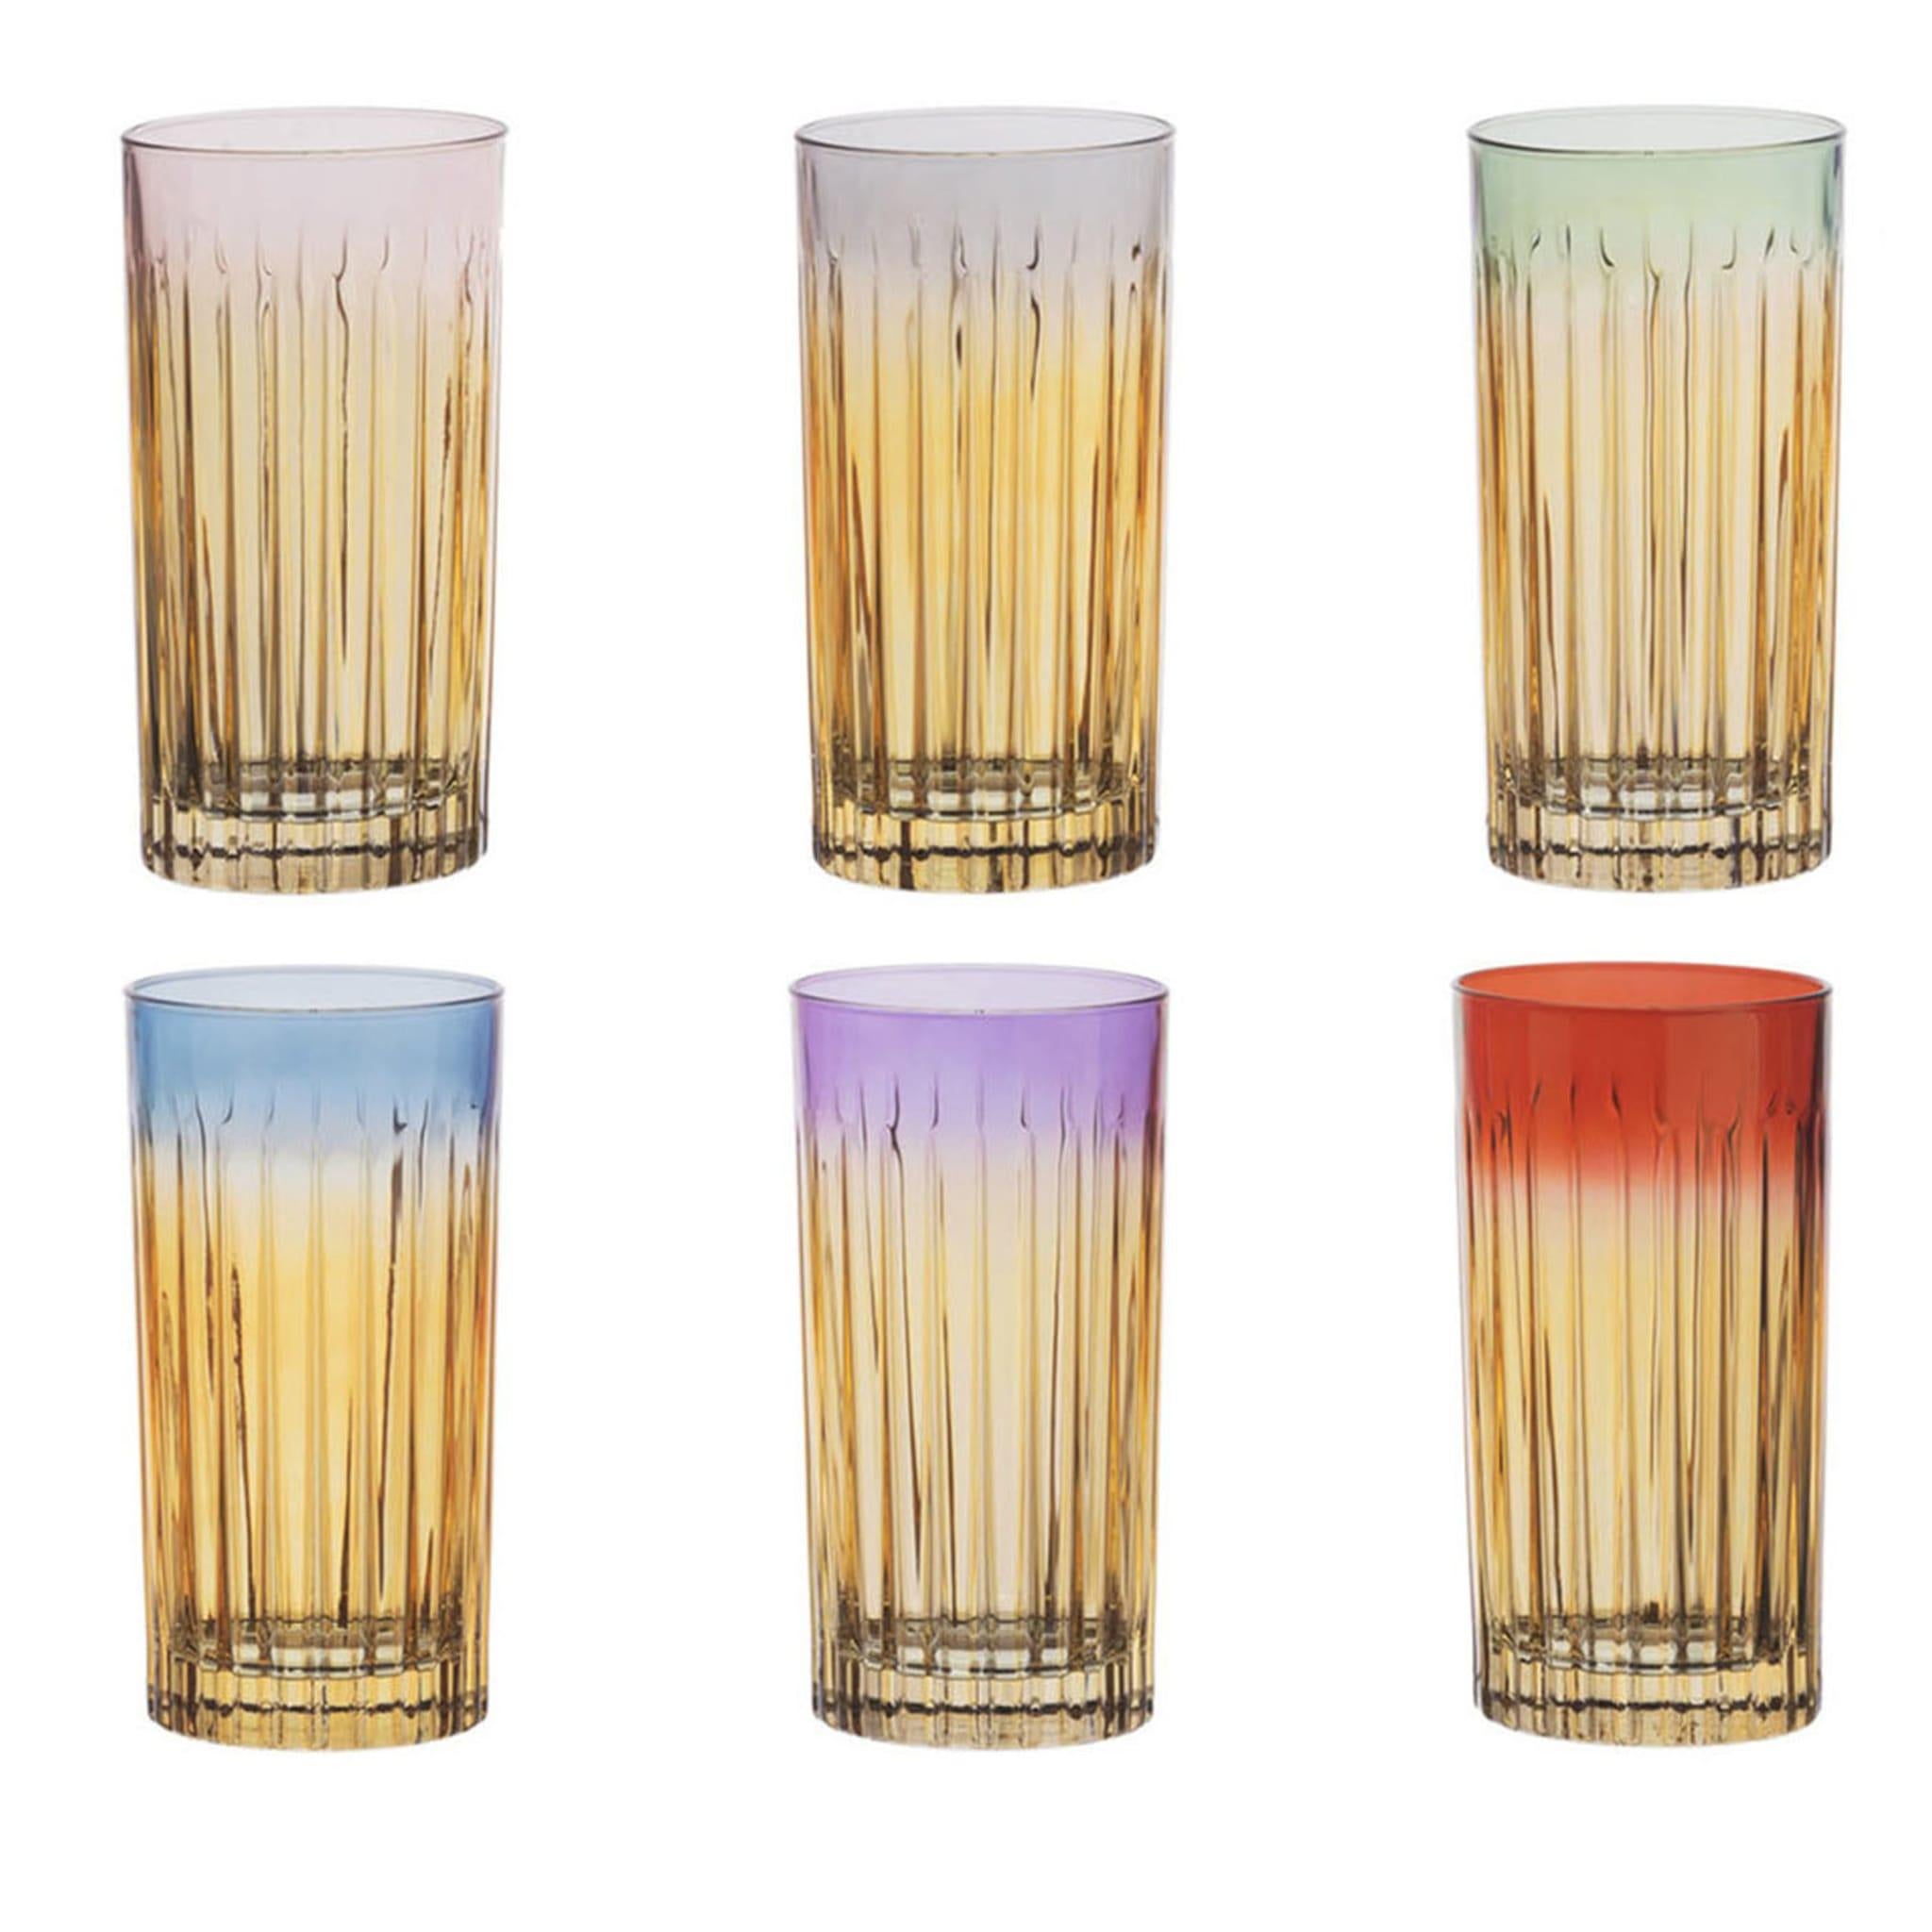 Die Ränder der Gläser in diesem Set haben jeweils eine eigene, einzigartige Farbe. Jedes handgefertigte Glas hat außerdem einen Ombre-Effekt, der die helle Randfarbe in einen rauchigen, transparenten Farbton am Boden verwandelt.